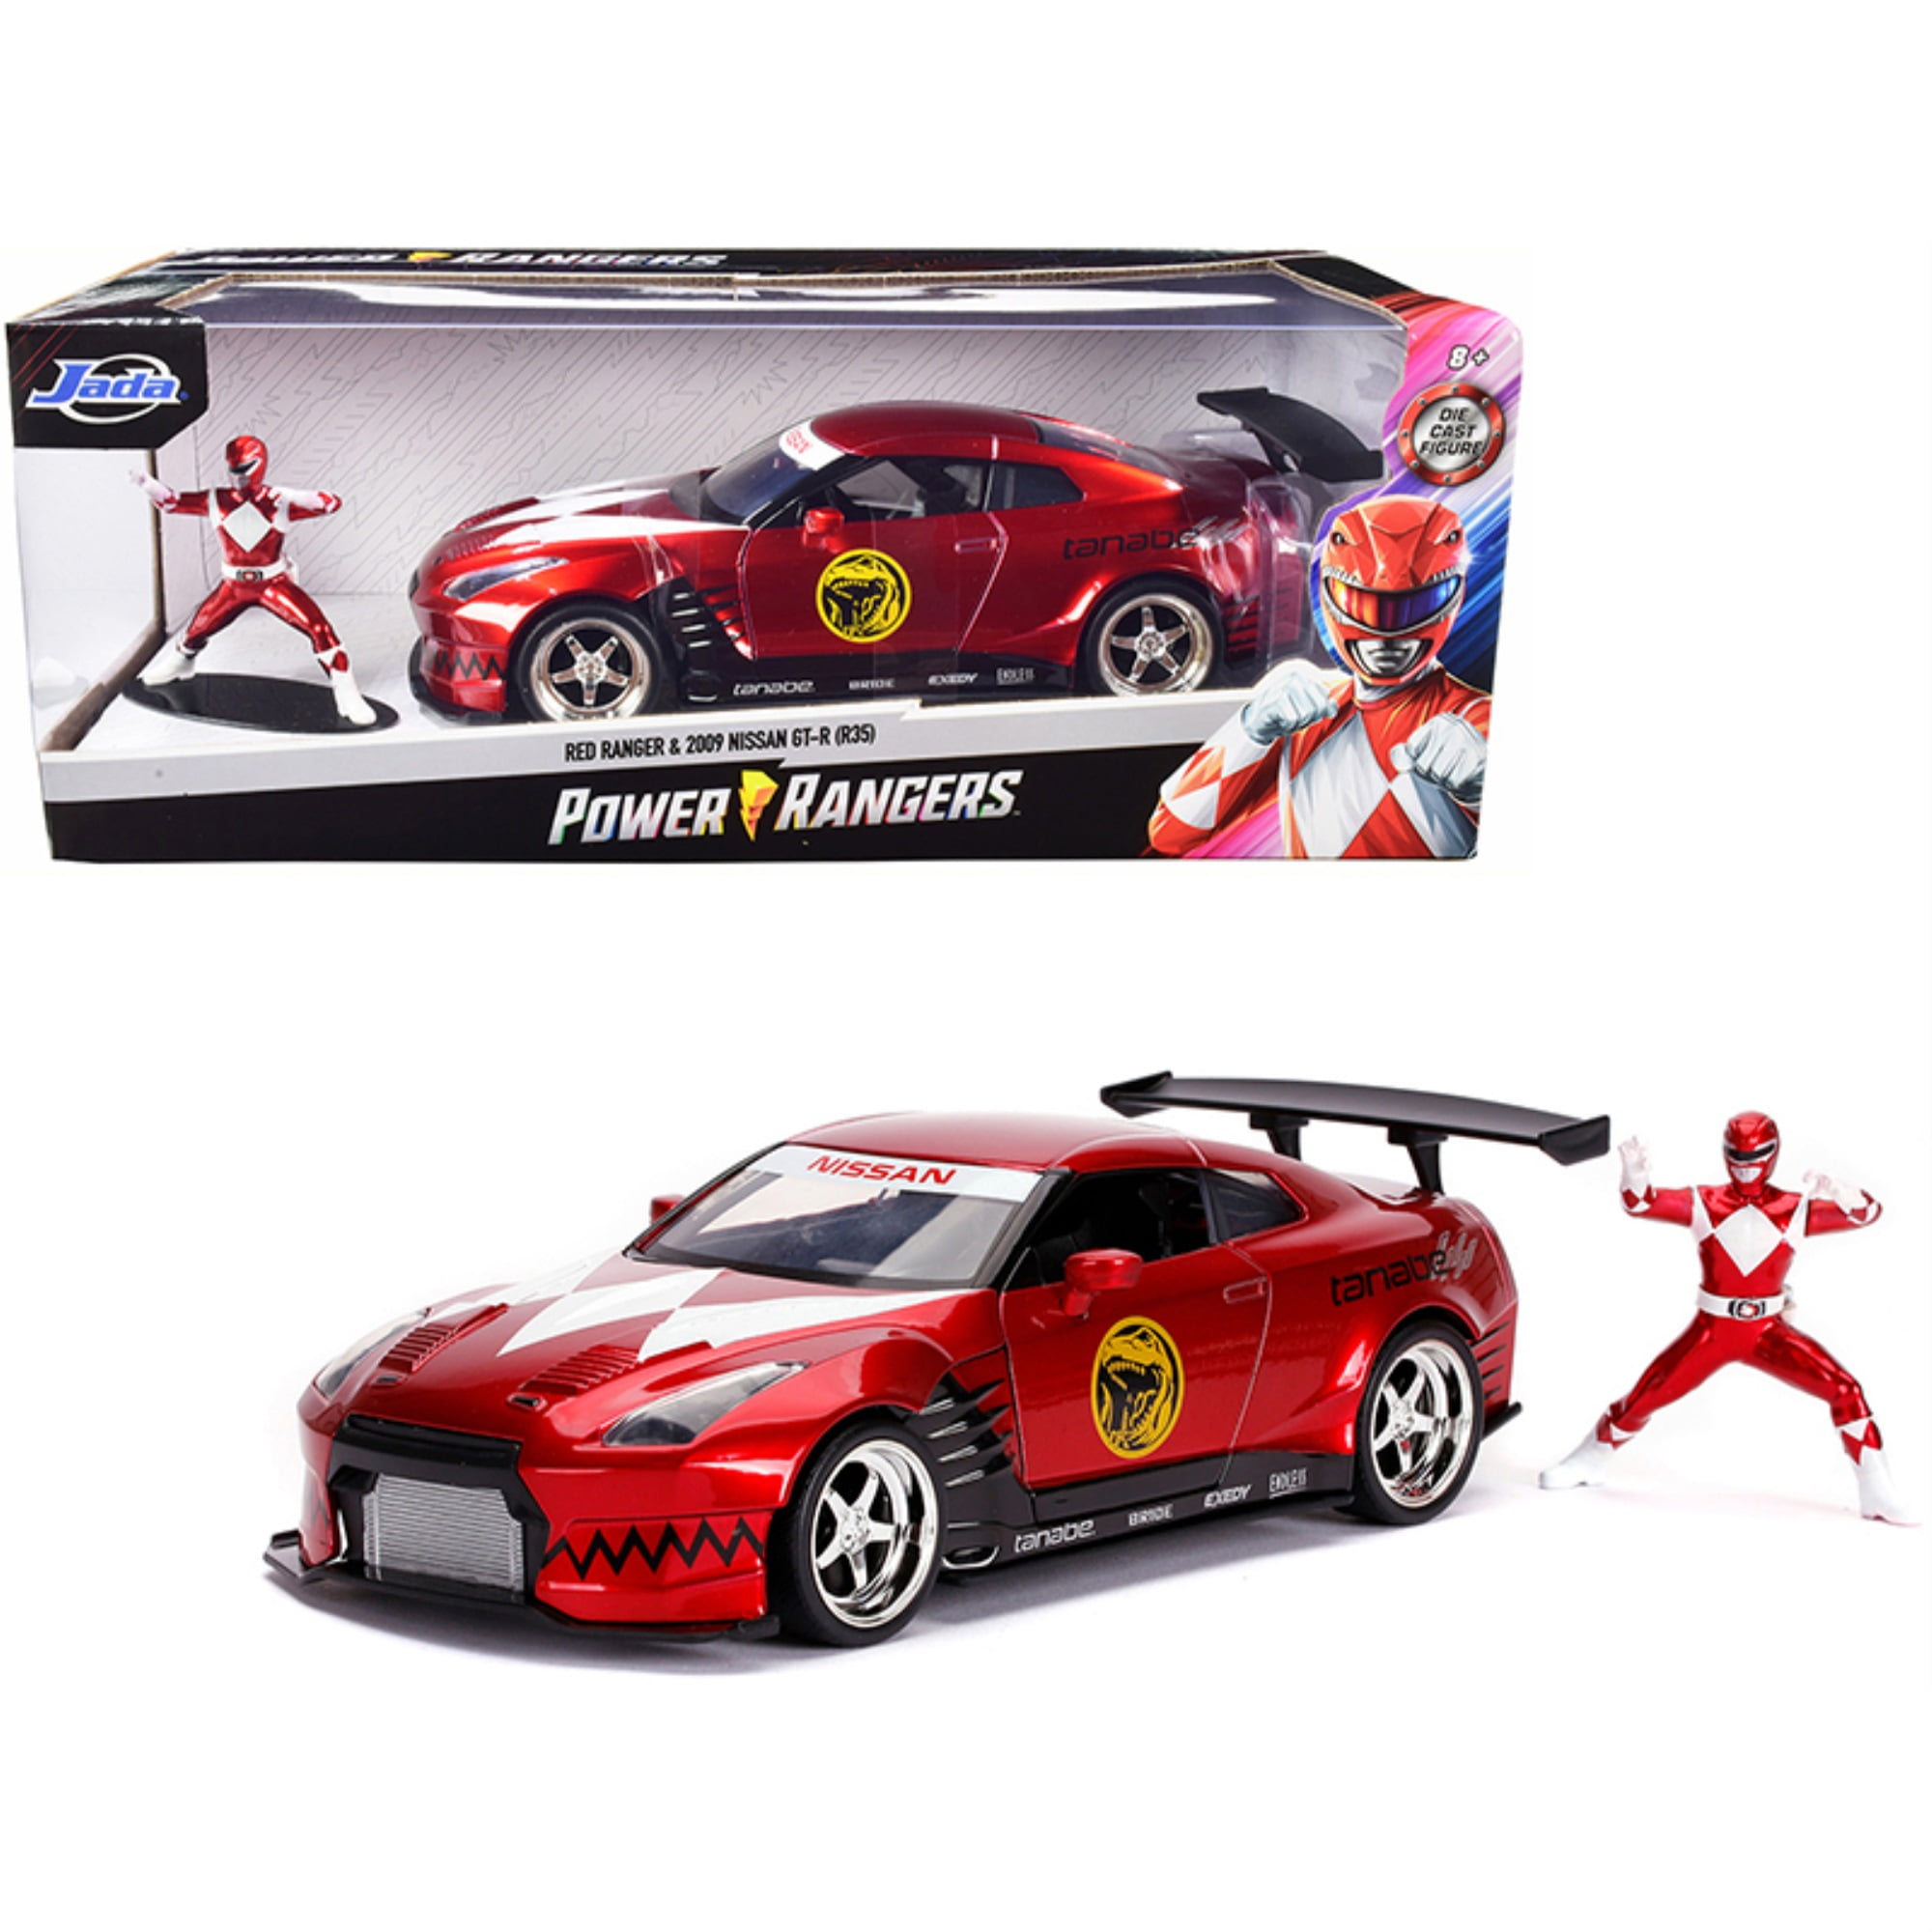 Türen zum Öffnen R35 Jada Toys 253255025 Maßstab 1:24 2009 Nissan GT-R Spielzeugauto rot inkl Die-cast Power Rangers Figur